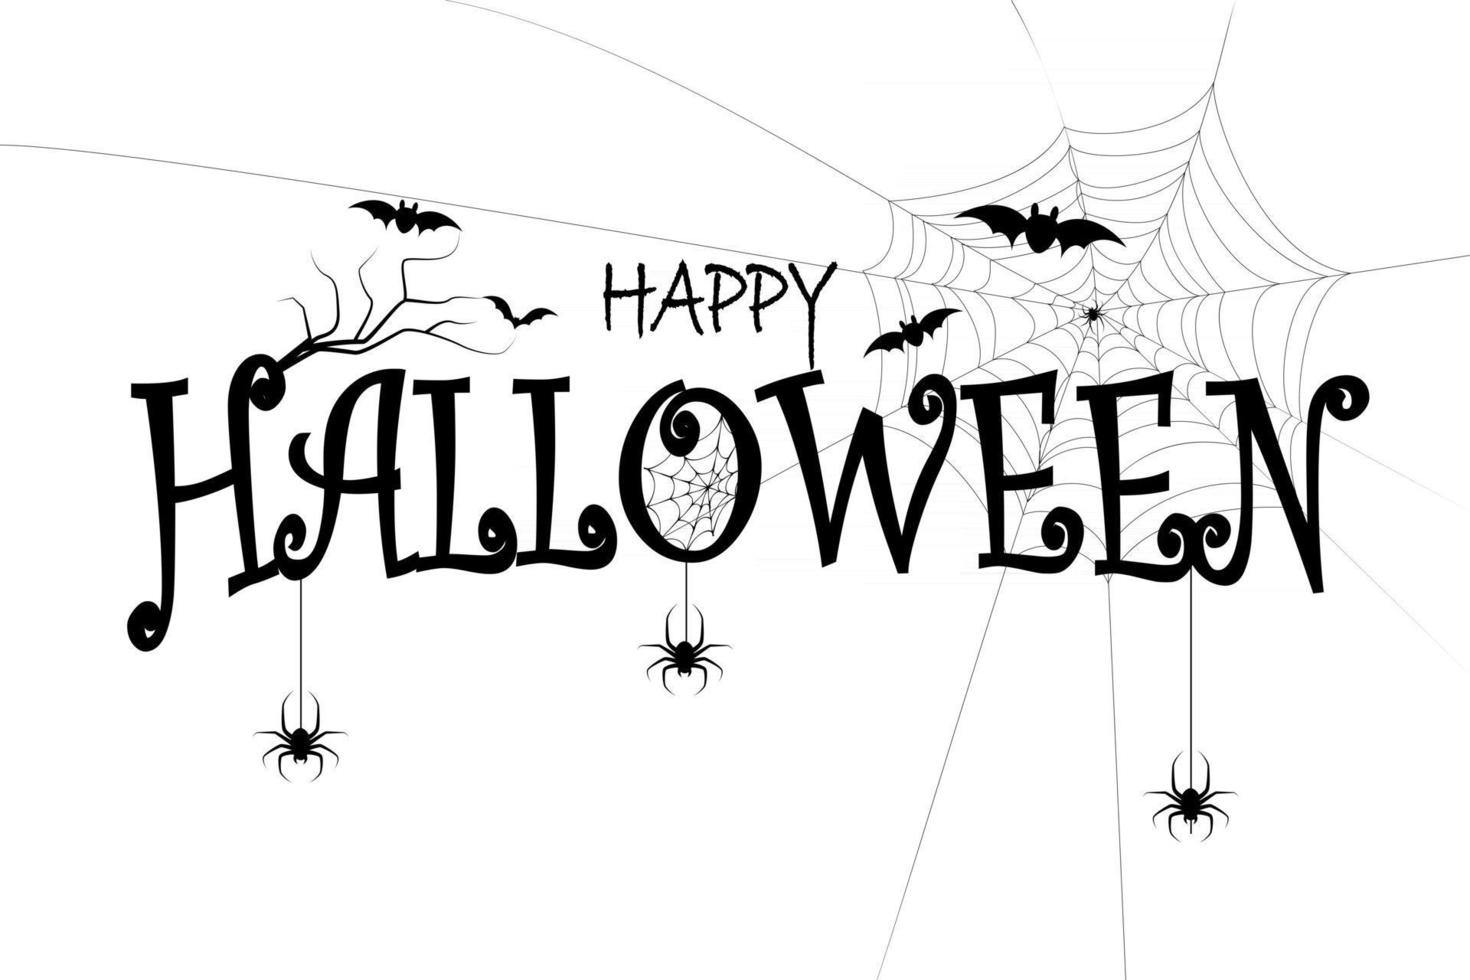 happy halloween-verkoopbanners of achtergrond voor feestuitnodigingen vector